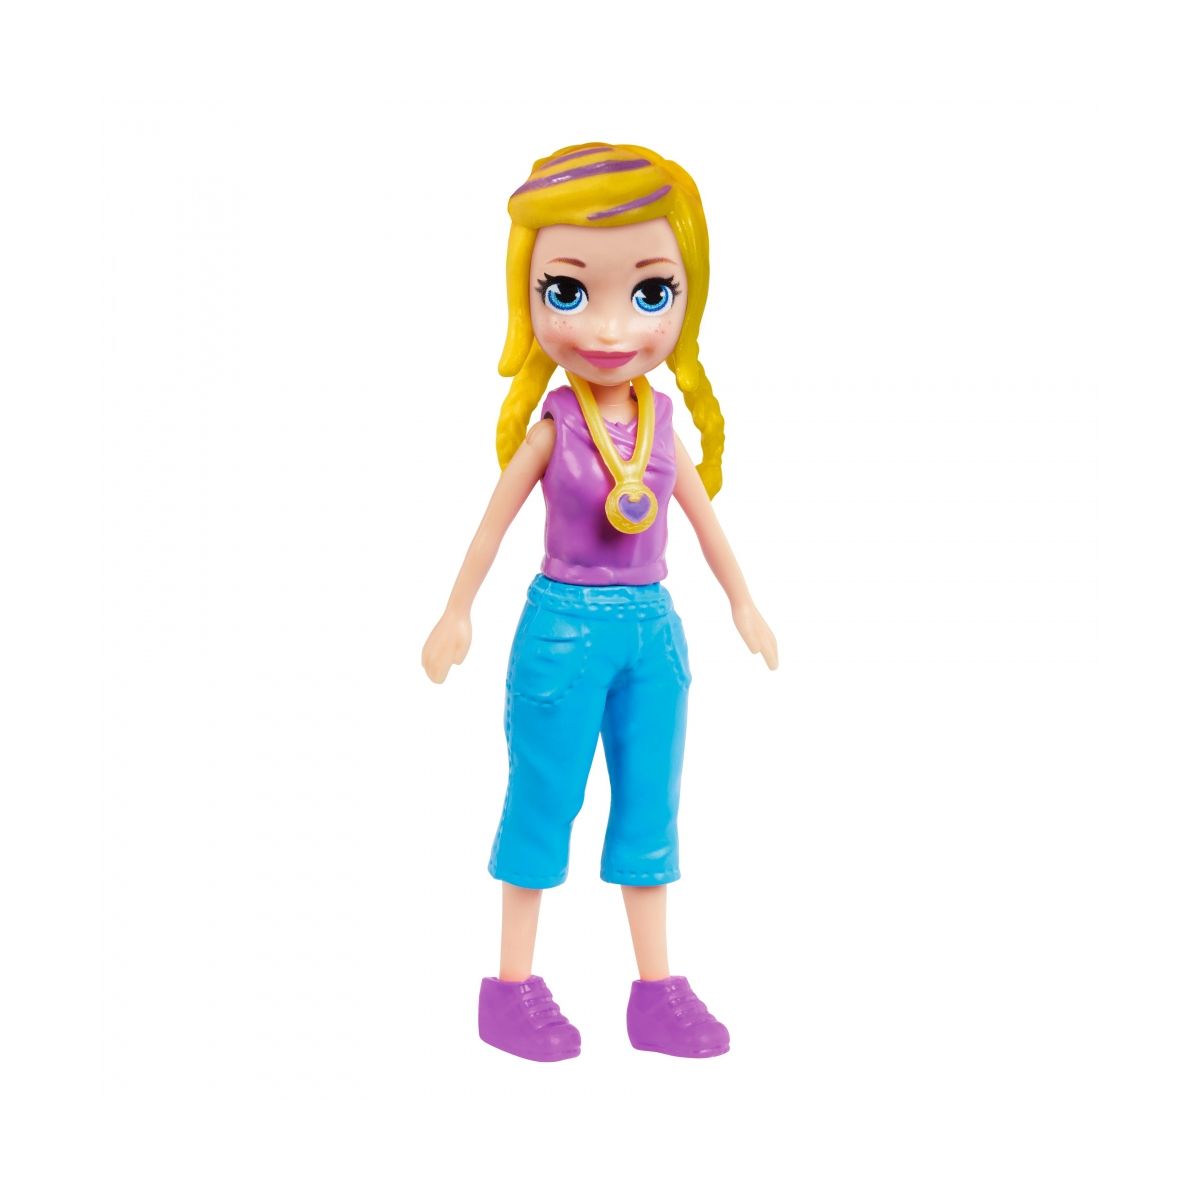 Figurka Mattel Polly Pocket karuzelka stylu (HKW04)